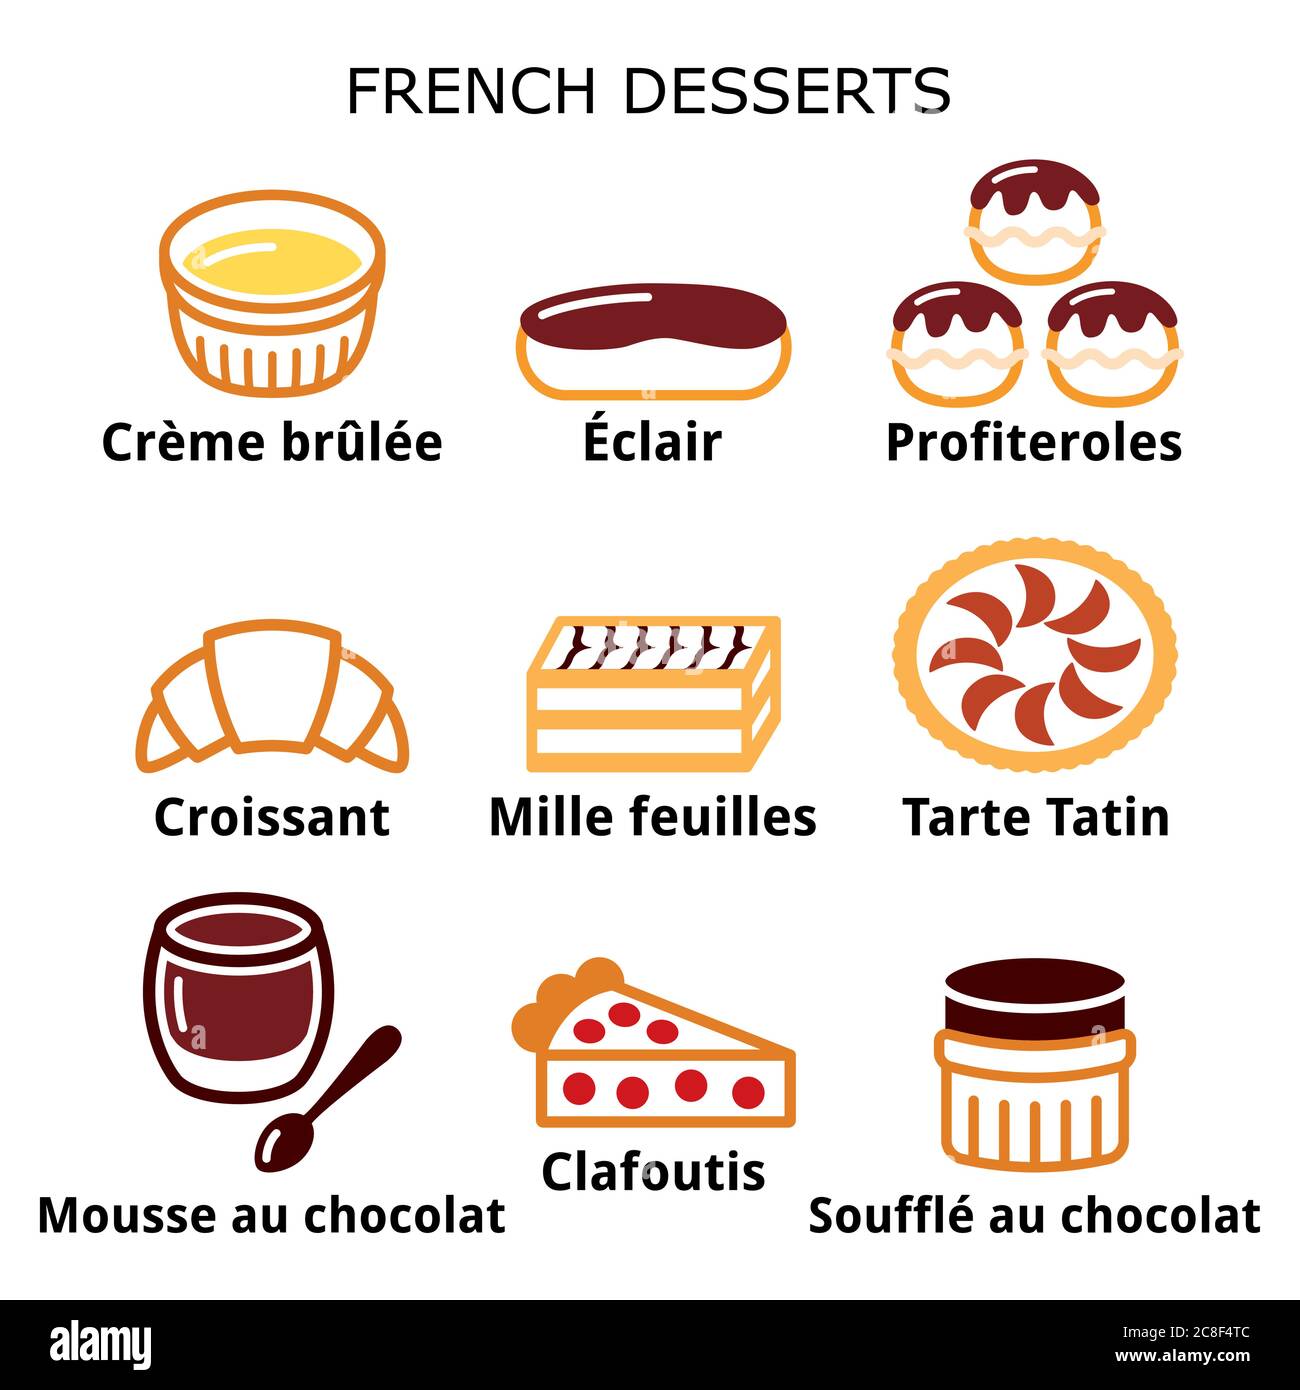 Desserts français, pâtisseries et gâteaux : crème brûlée, mousse au chocolat, soufflé Illustration de Vecteur